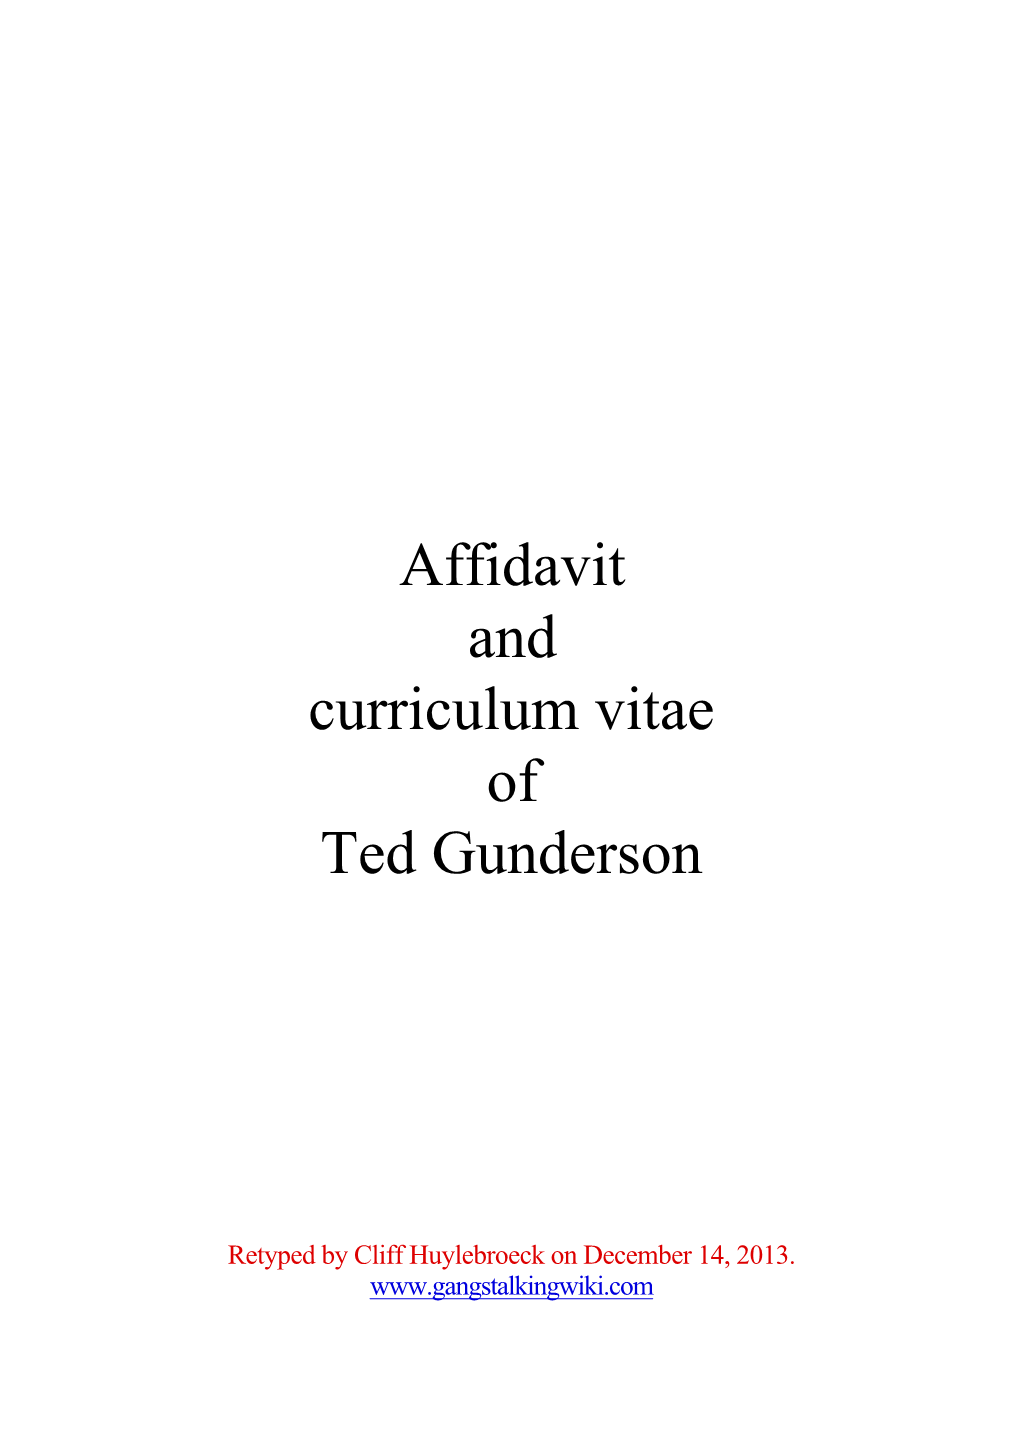 Ted Gunderson's Affidavit